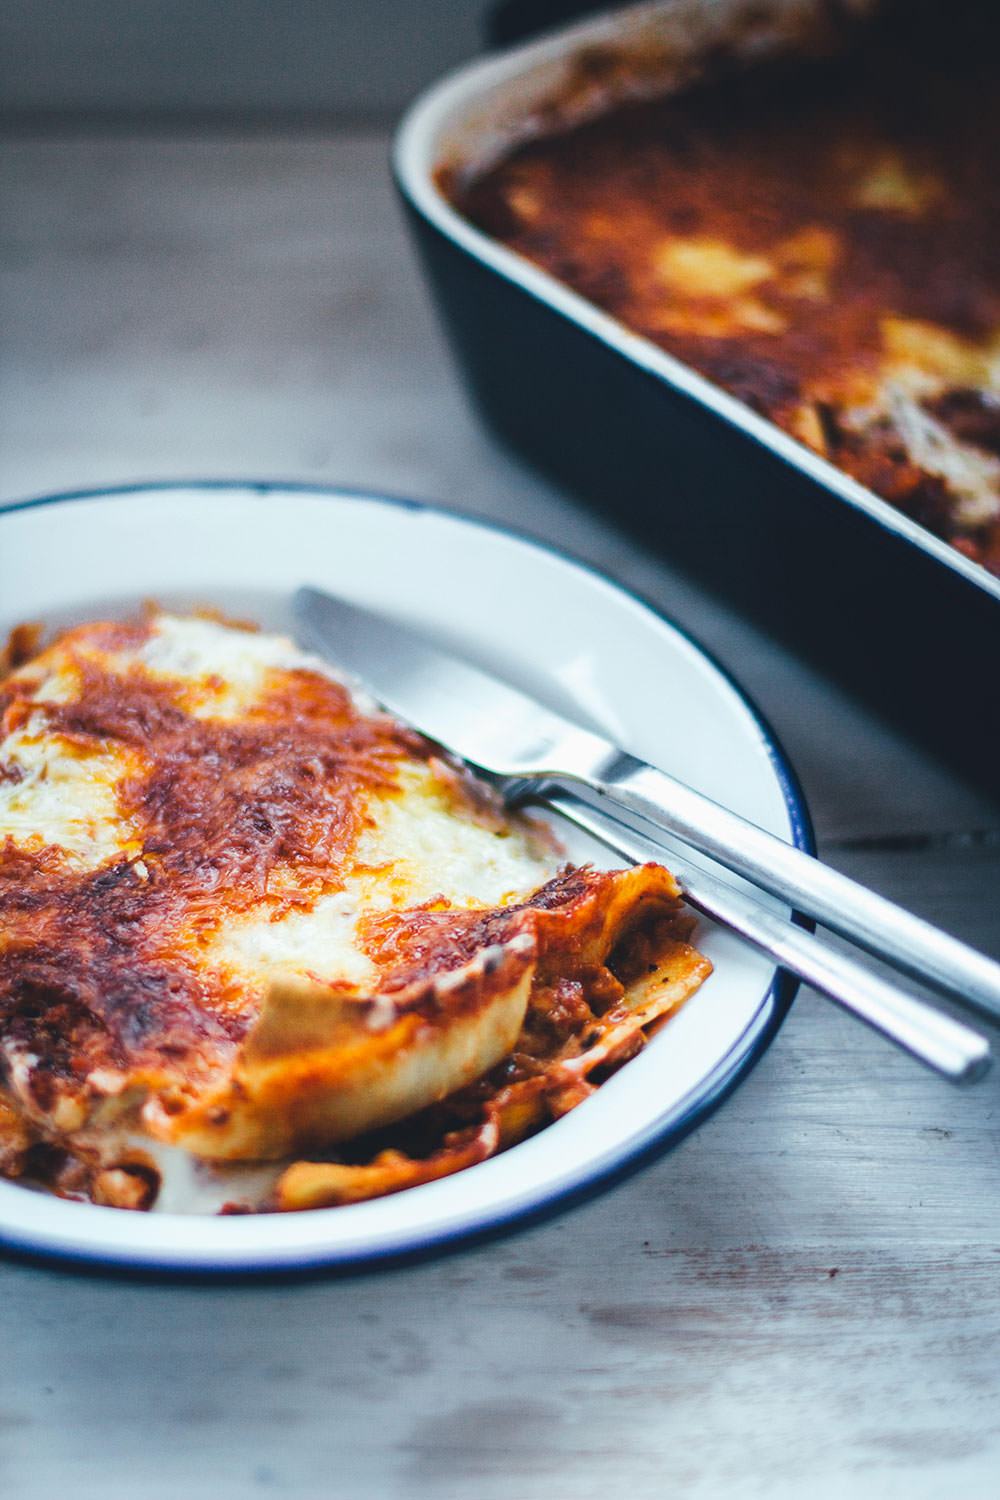 Selbst gemachte Lasagne al forno – der italienische Klassiker für geniale Pasta! Frische Lasagneplatten, würzige Hackfleischsauce in Form eines Ragú alla bolognese, dazu eine fein abgeschmeckte Béchamelsauce. Überbacken mit Mozzarella und Butterflöckchen. Das ist Soulfood vom Feinsten! | moeyskitchen.com